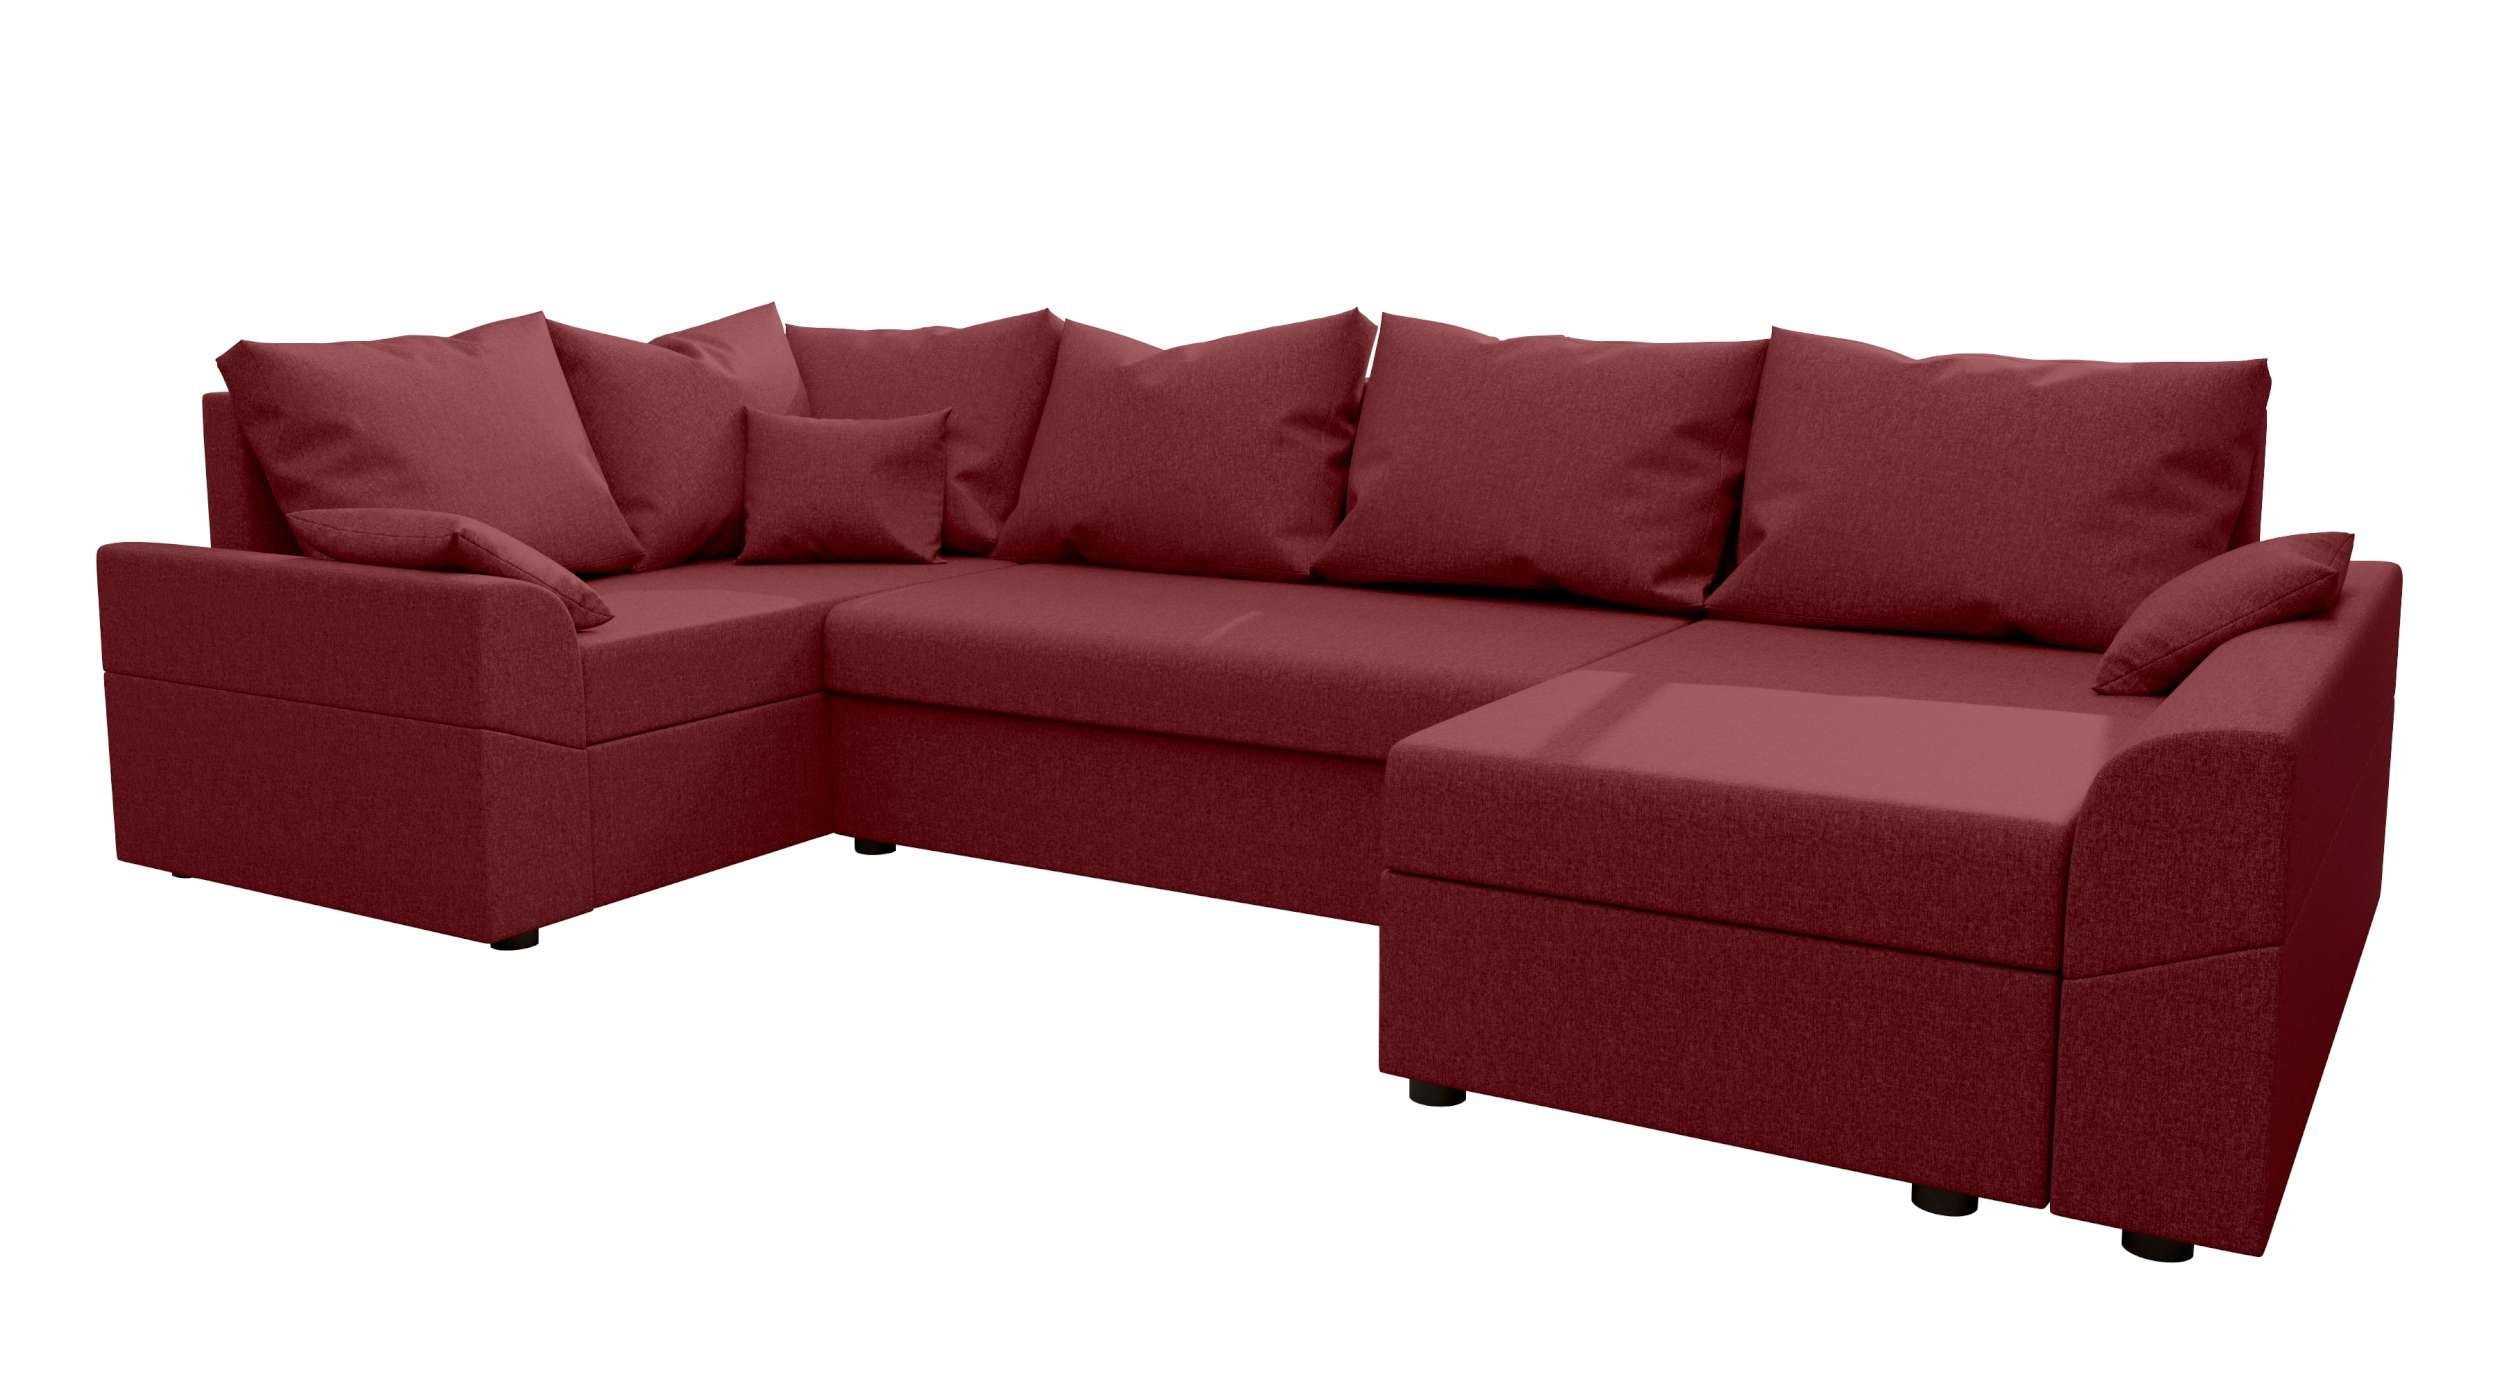 Eckcouch, Sofa, Bettfunktion, Design mit mit U-Form, Bailey, Sitzkomfort, Bettkasten, Wohnlandschaft Modern Stylefy